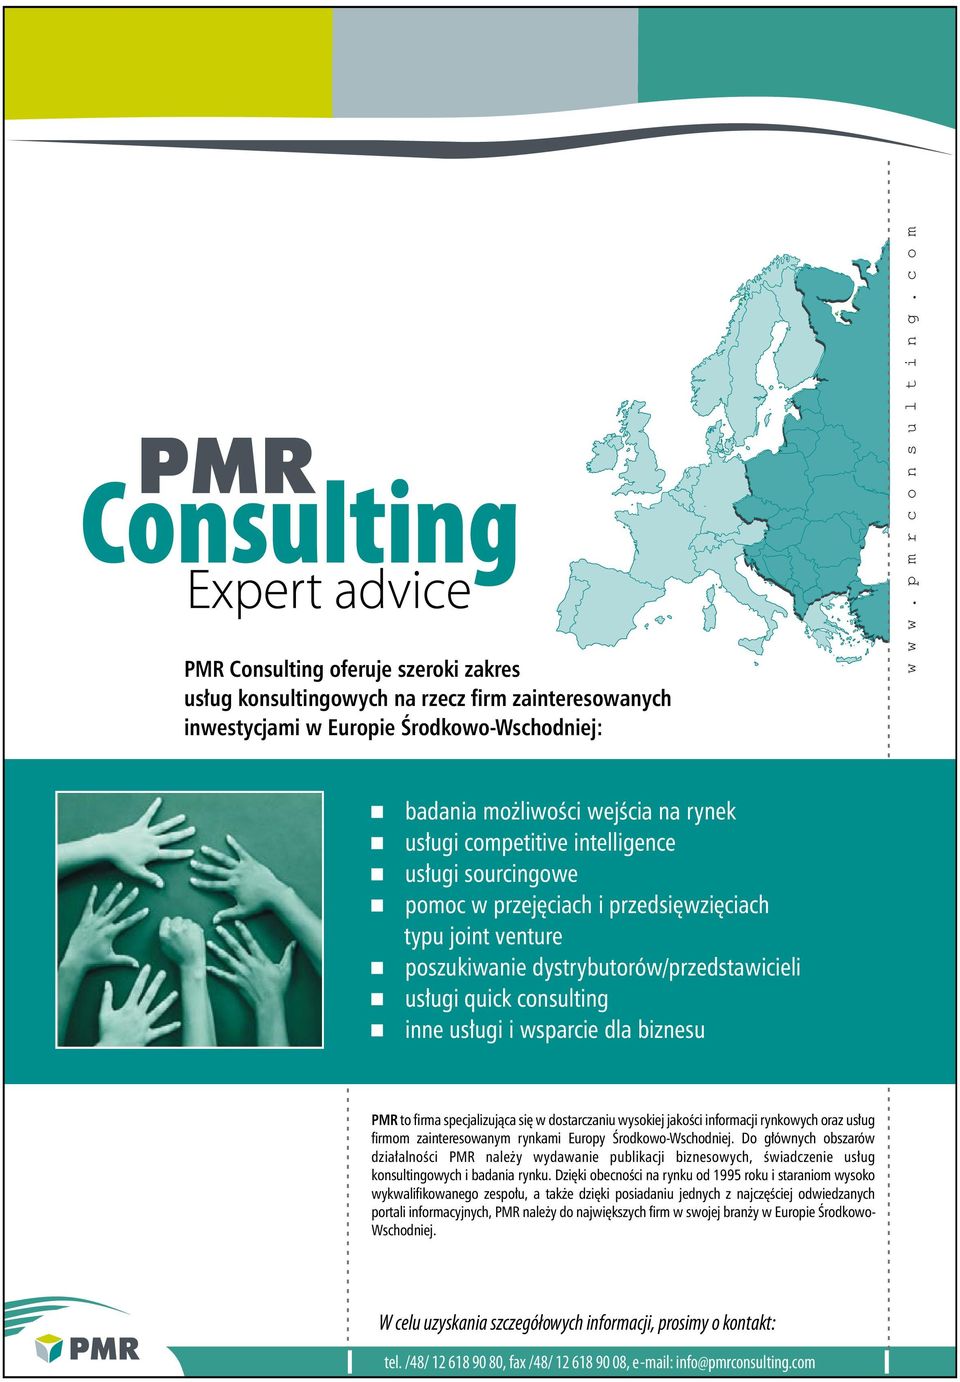 usługi quick consulting inne usługi i wsparcie dla biznesu PMR to firma specjalizująca się w dostarczaniu wysokiej jakości informacji rynkowych oraz usług firmom zainteresowanym rynkami Europy